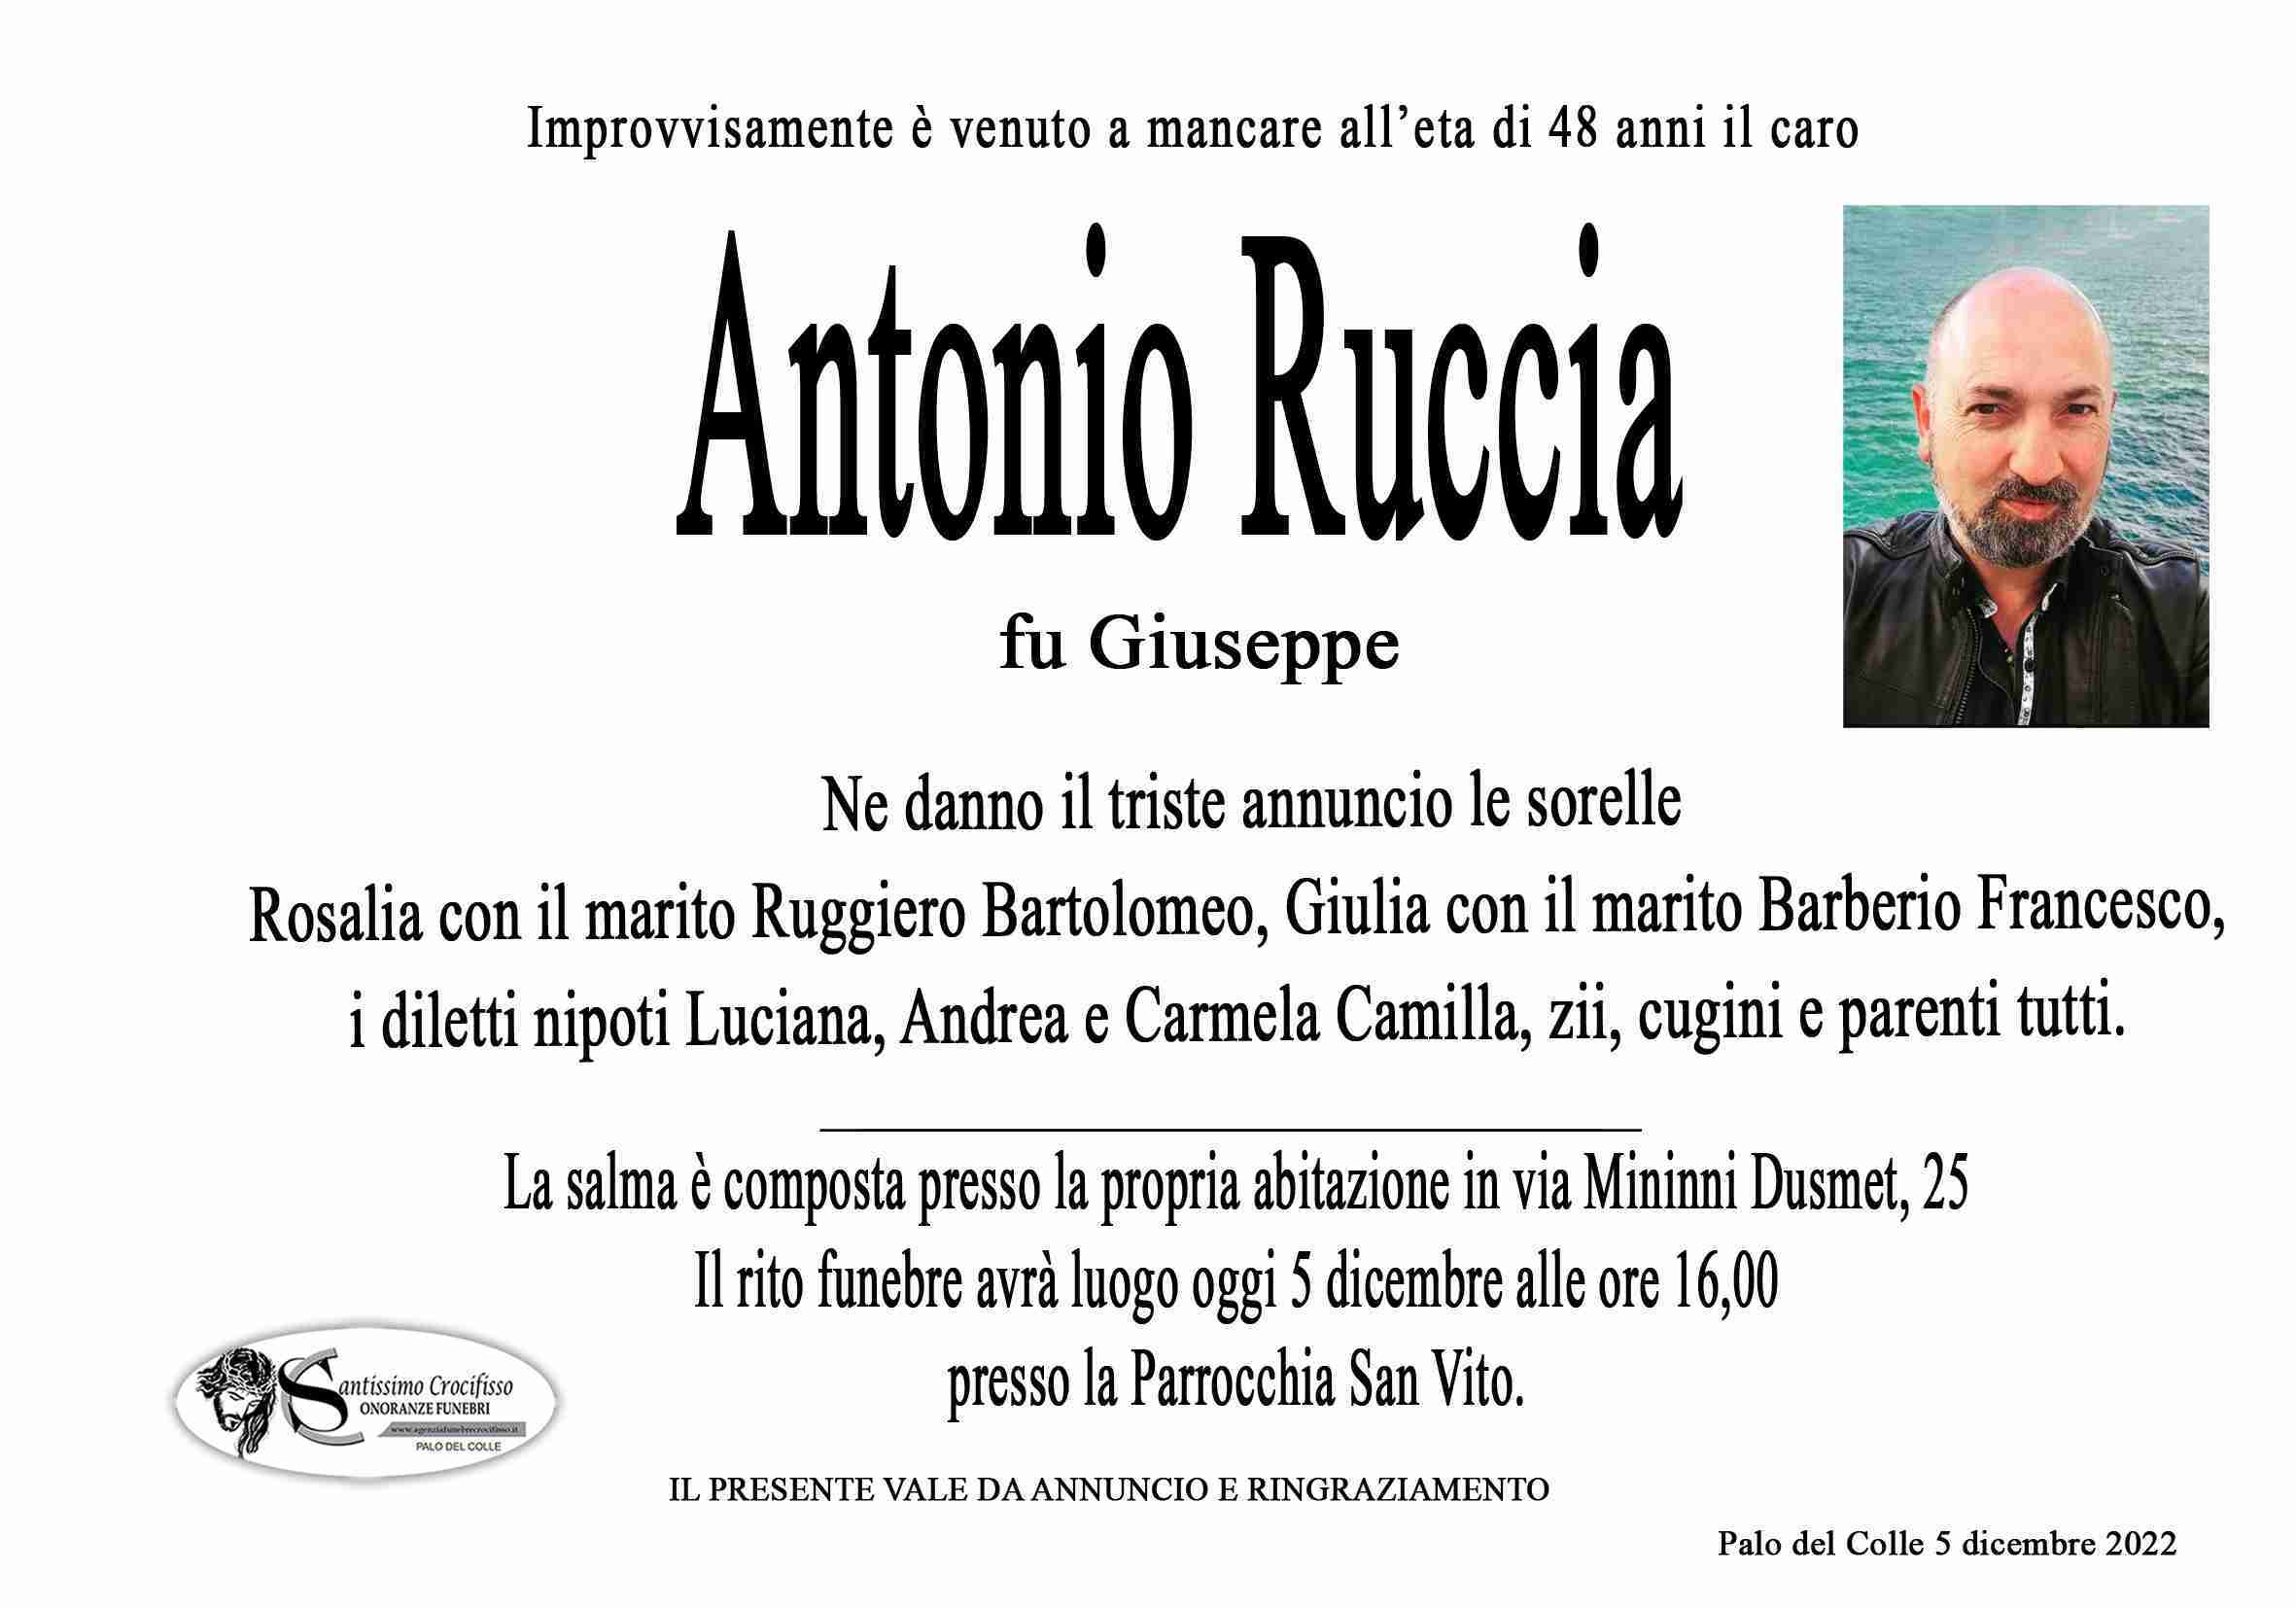 Ruccia Antonio